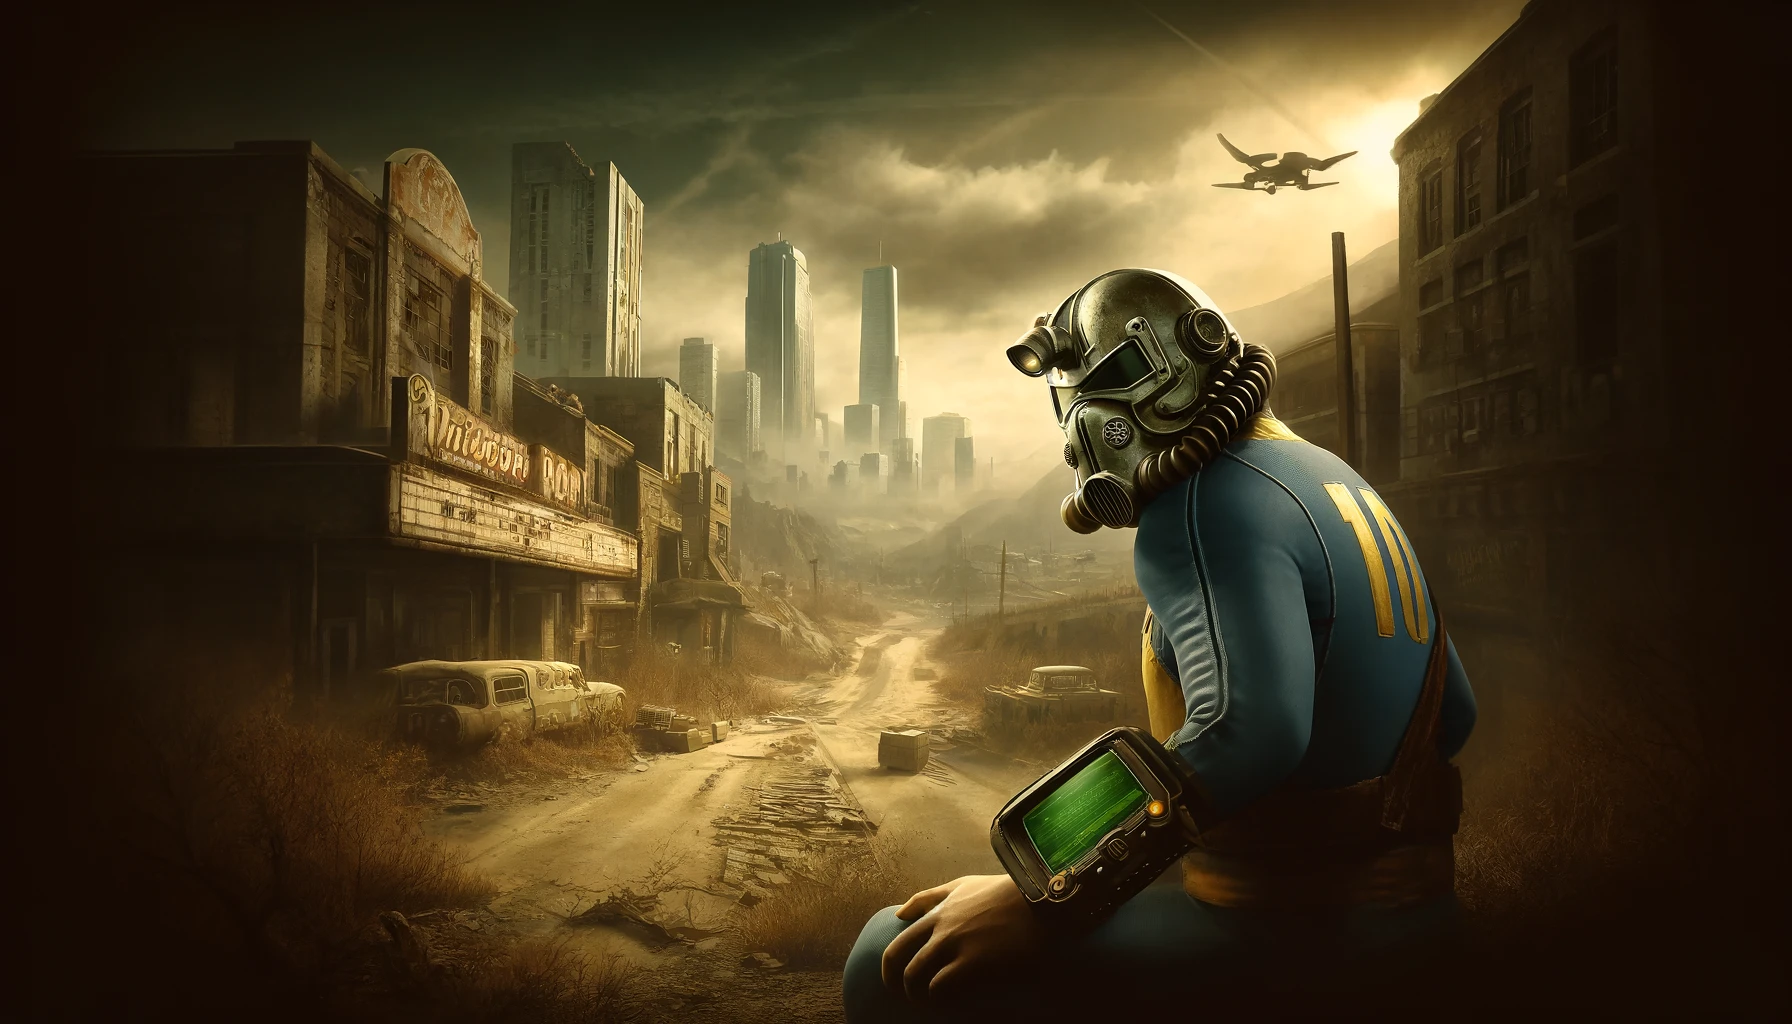 Die Fallout-Serie auf Amazon Prime: Eine meisterhafte Umsetzung des postapokalyptischen Erbes